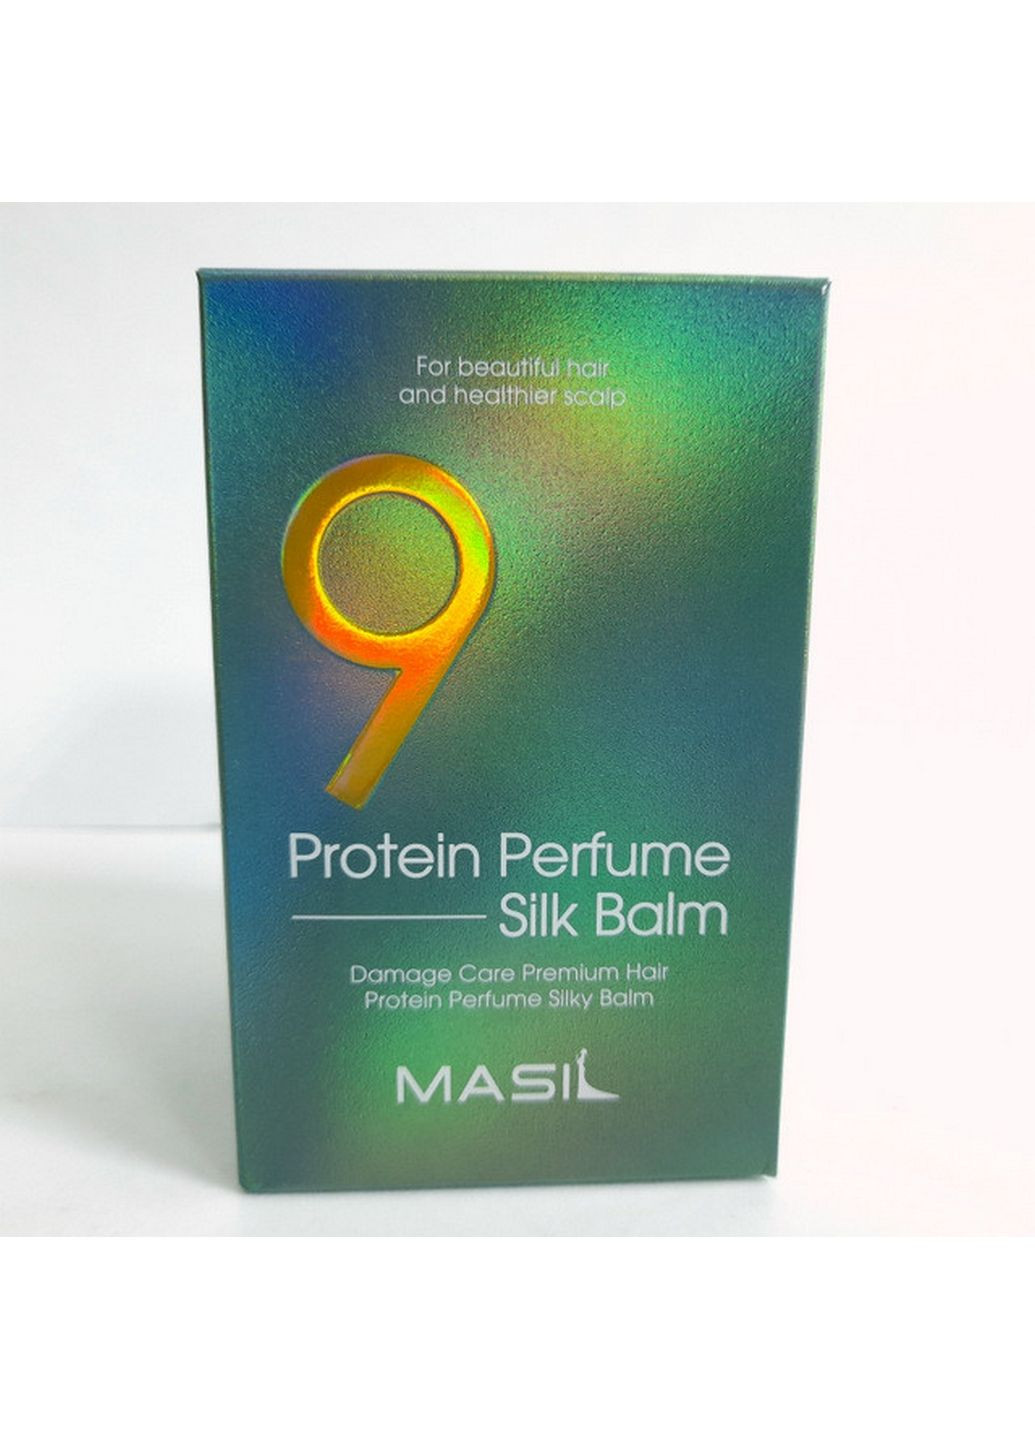 Бальзам парфюмированный защиты для волос шелковый с протеинами 9 protein perfume silk balm MASIL (282585322)